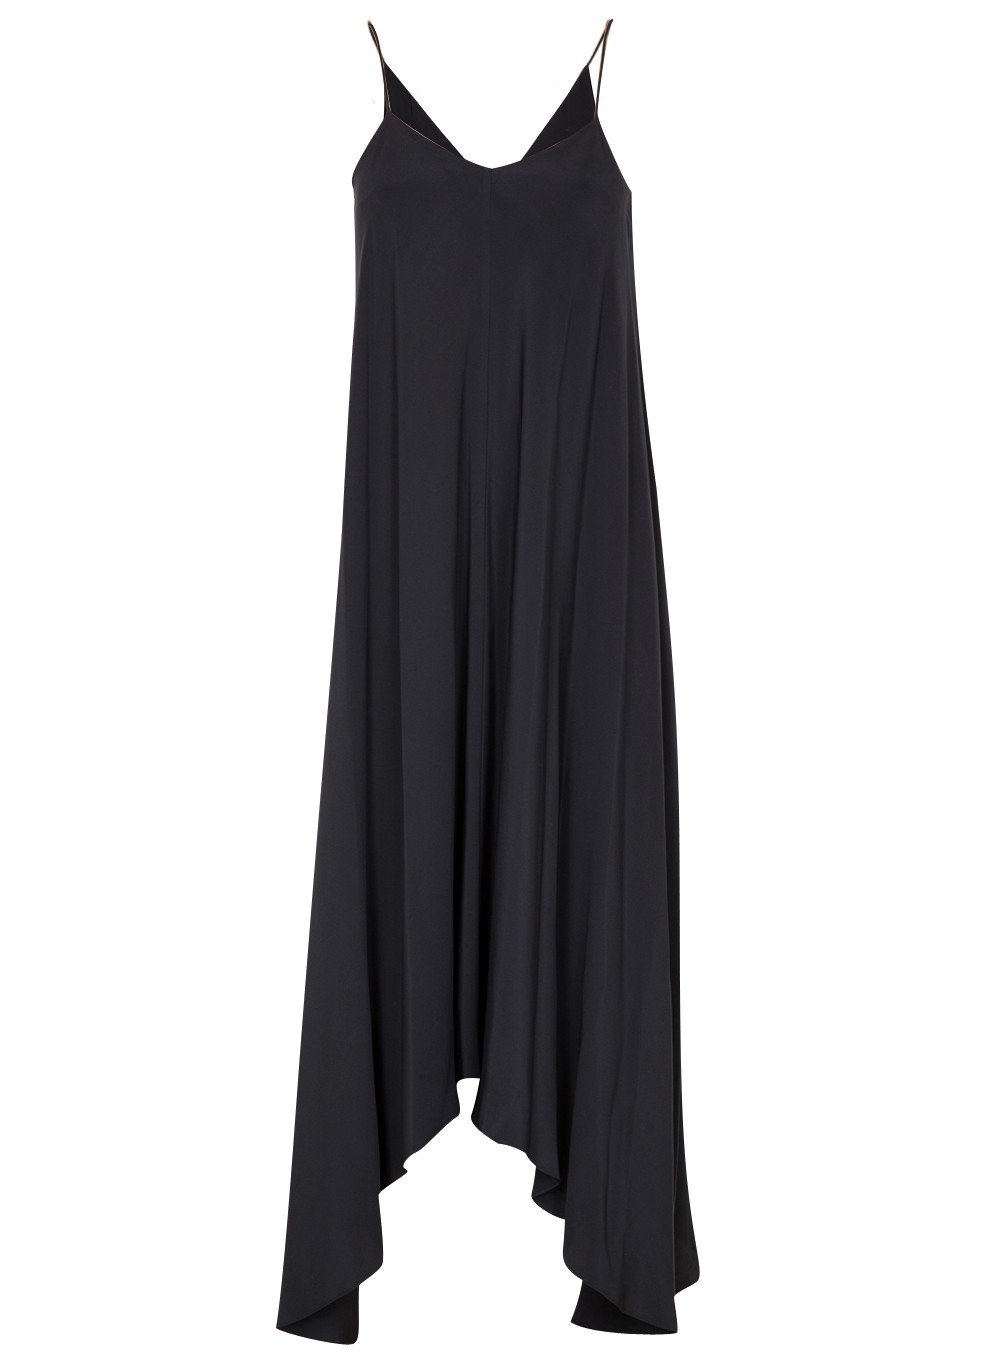 Tibi Silk Handkerchief-Hem Dress in Black | Lyst